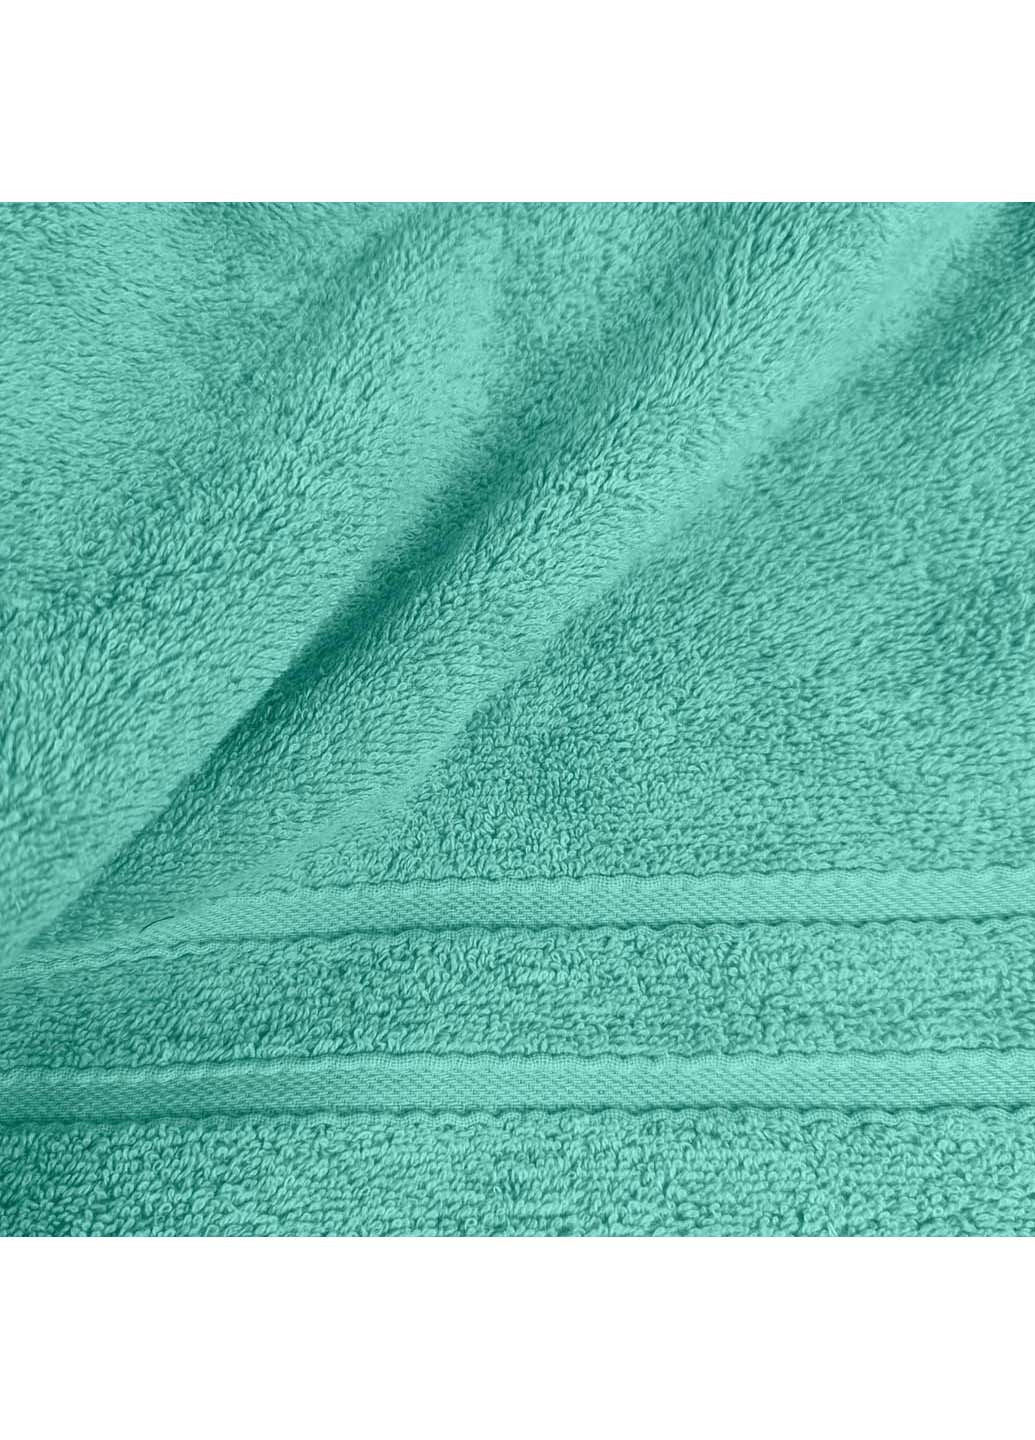 Cosas полотенца махровые agave 3 шт мятный производство -